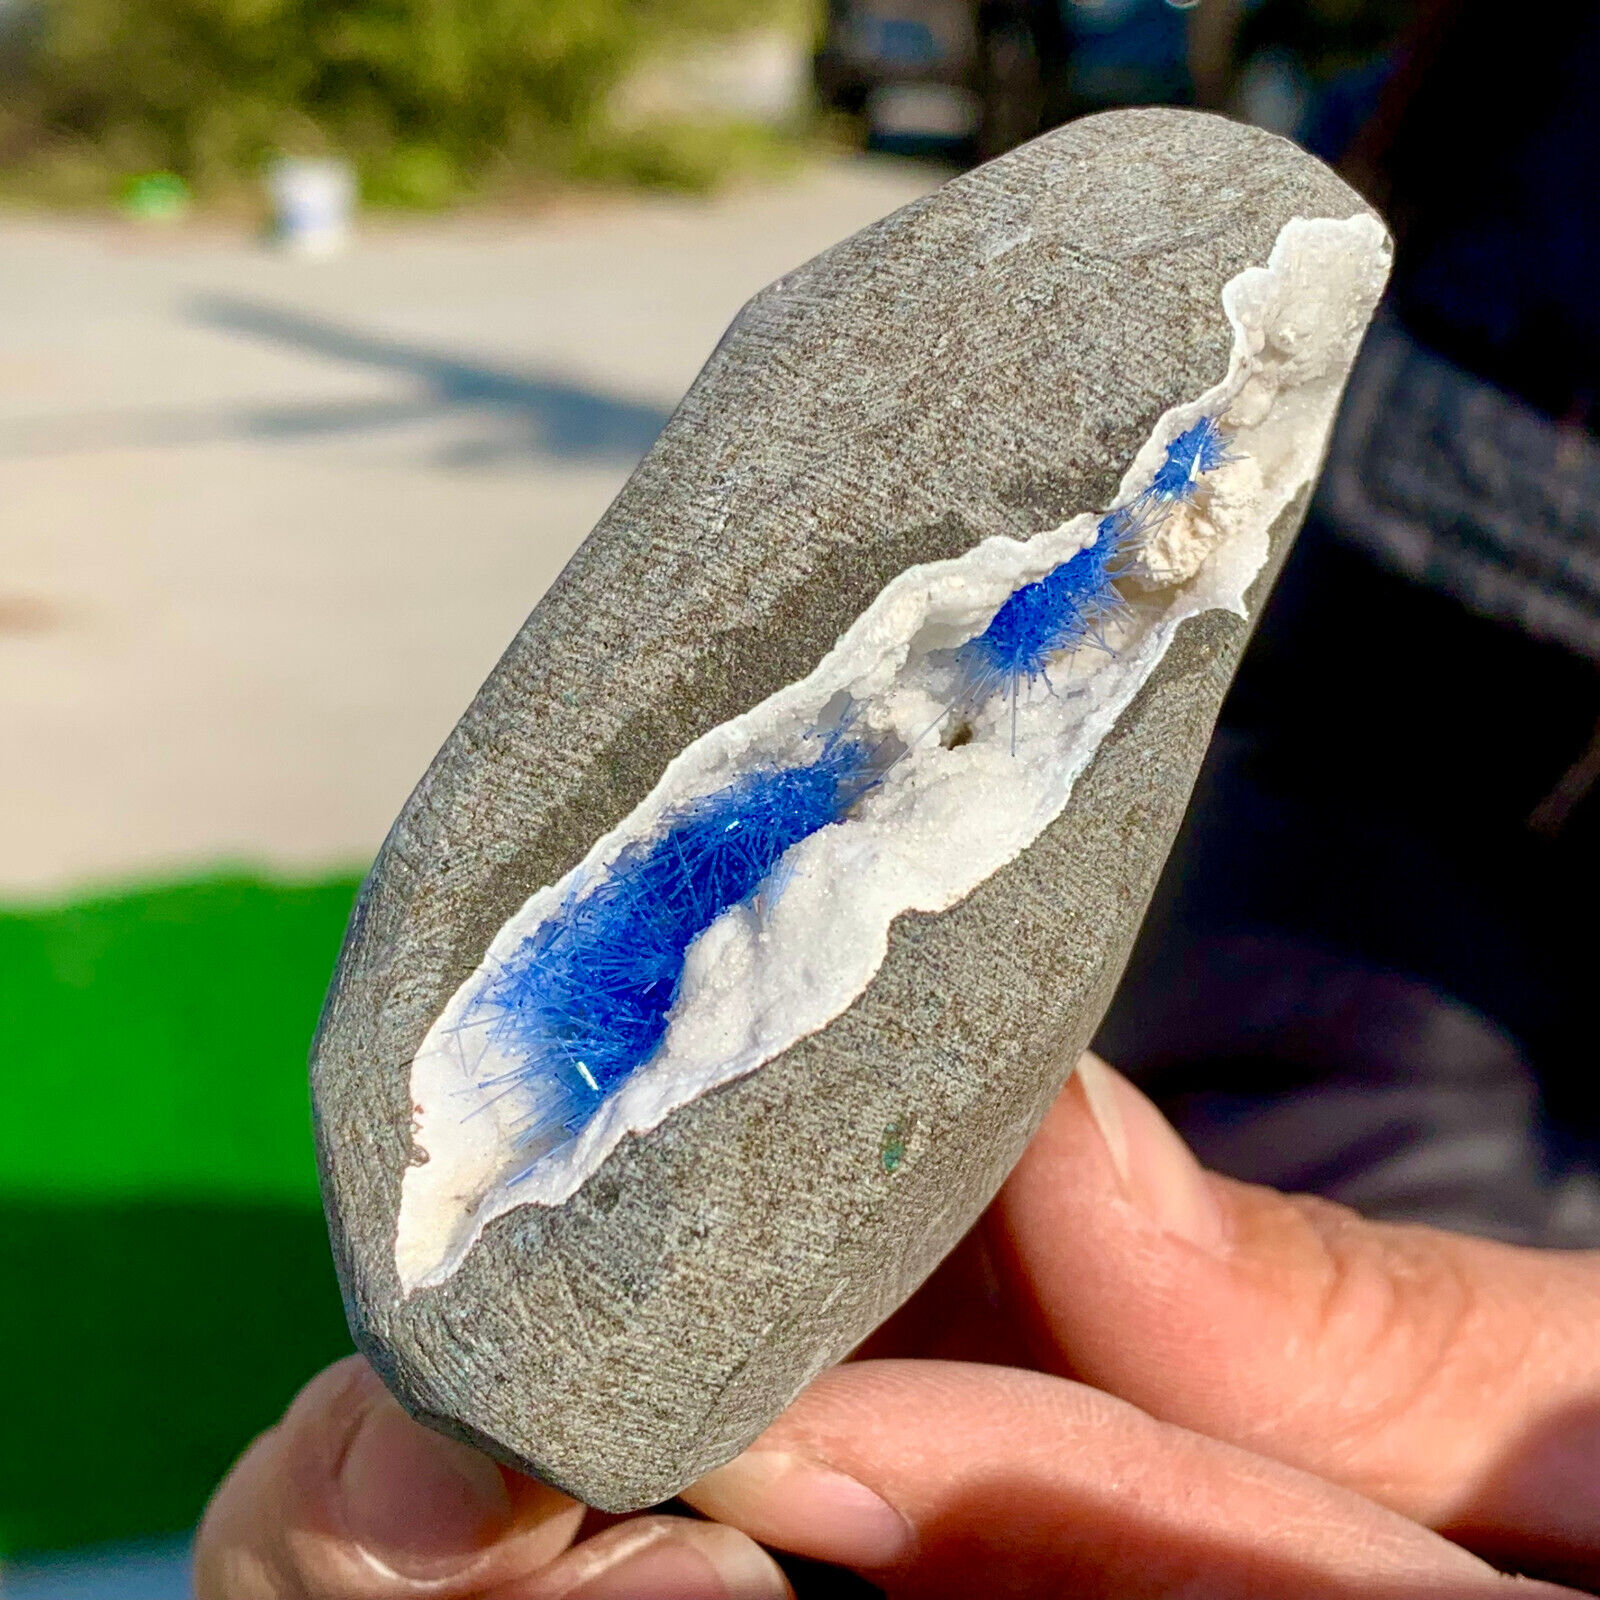 287G Rare Moroccan blue magnesite and quartz crystal coexisting specimen